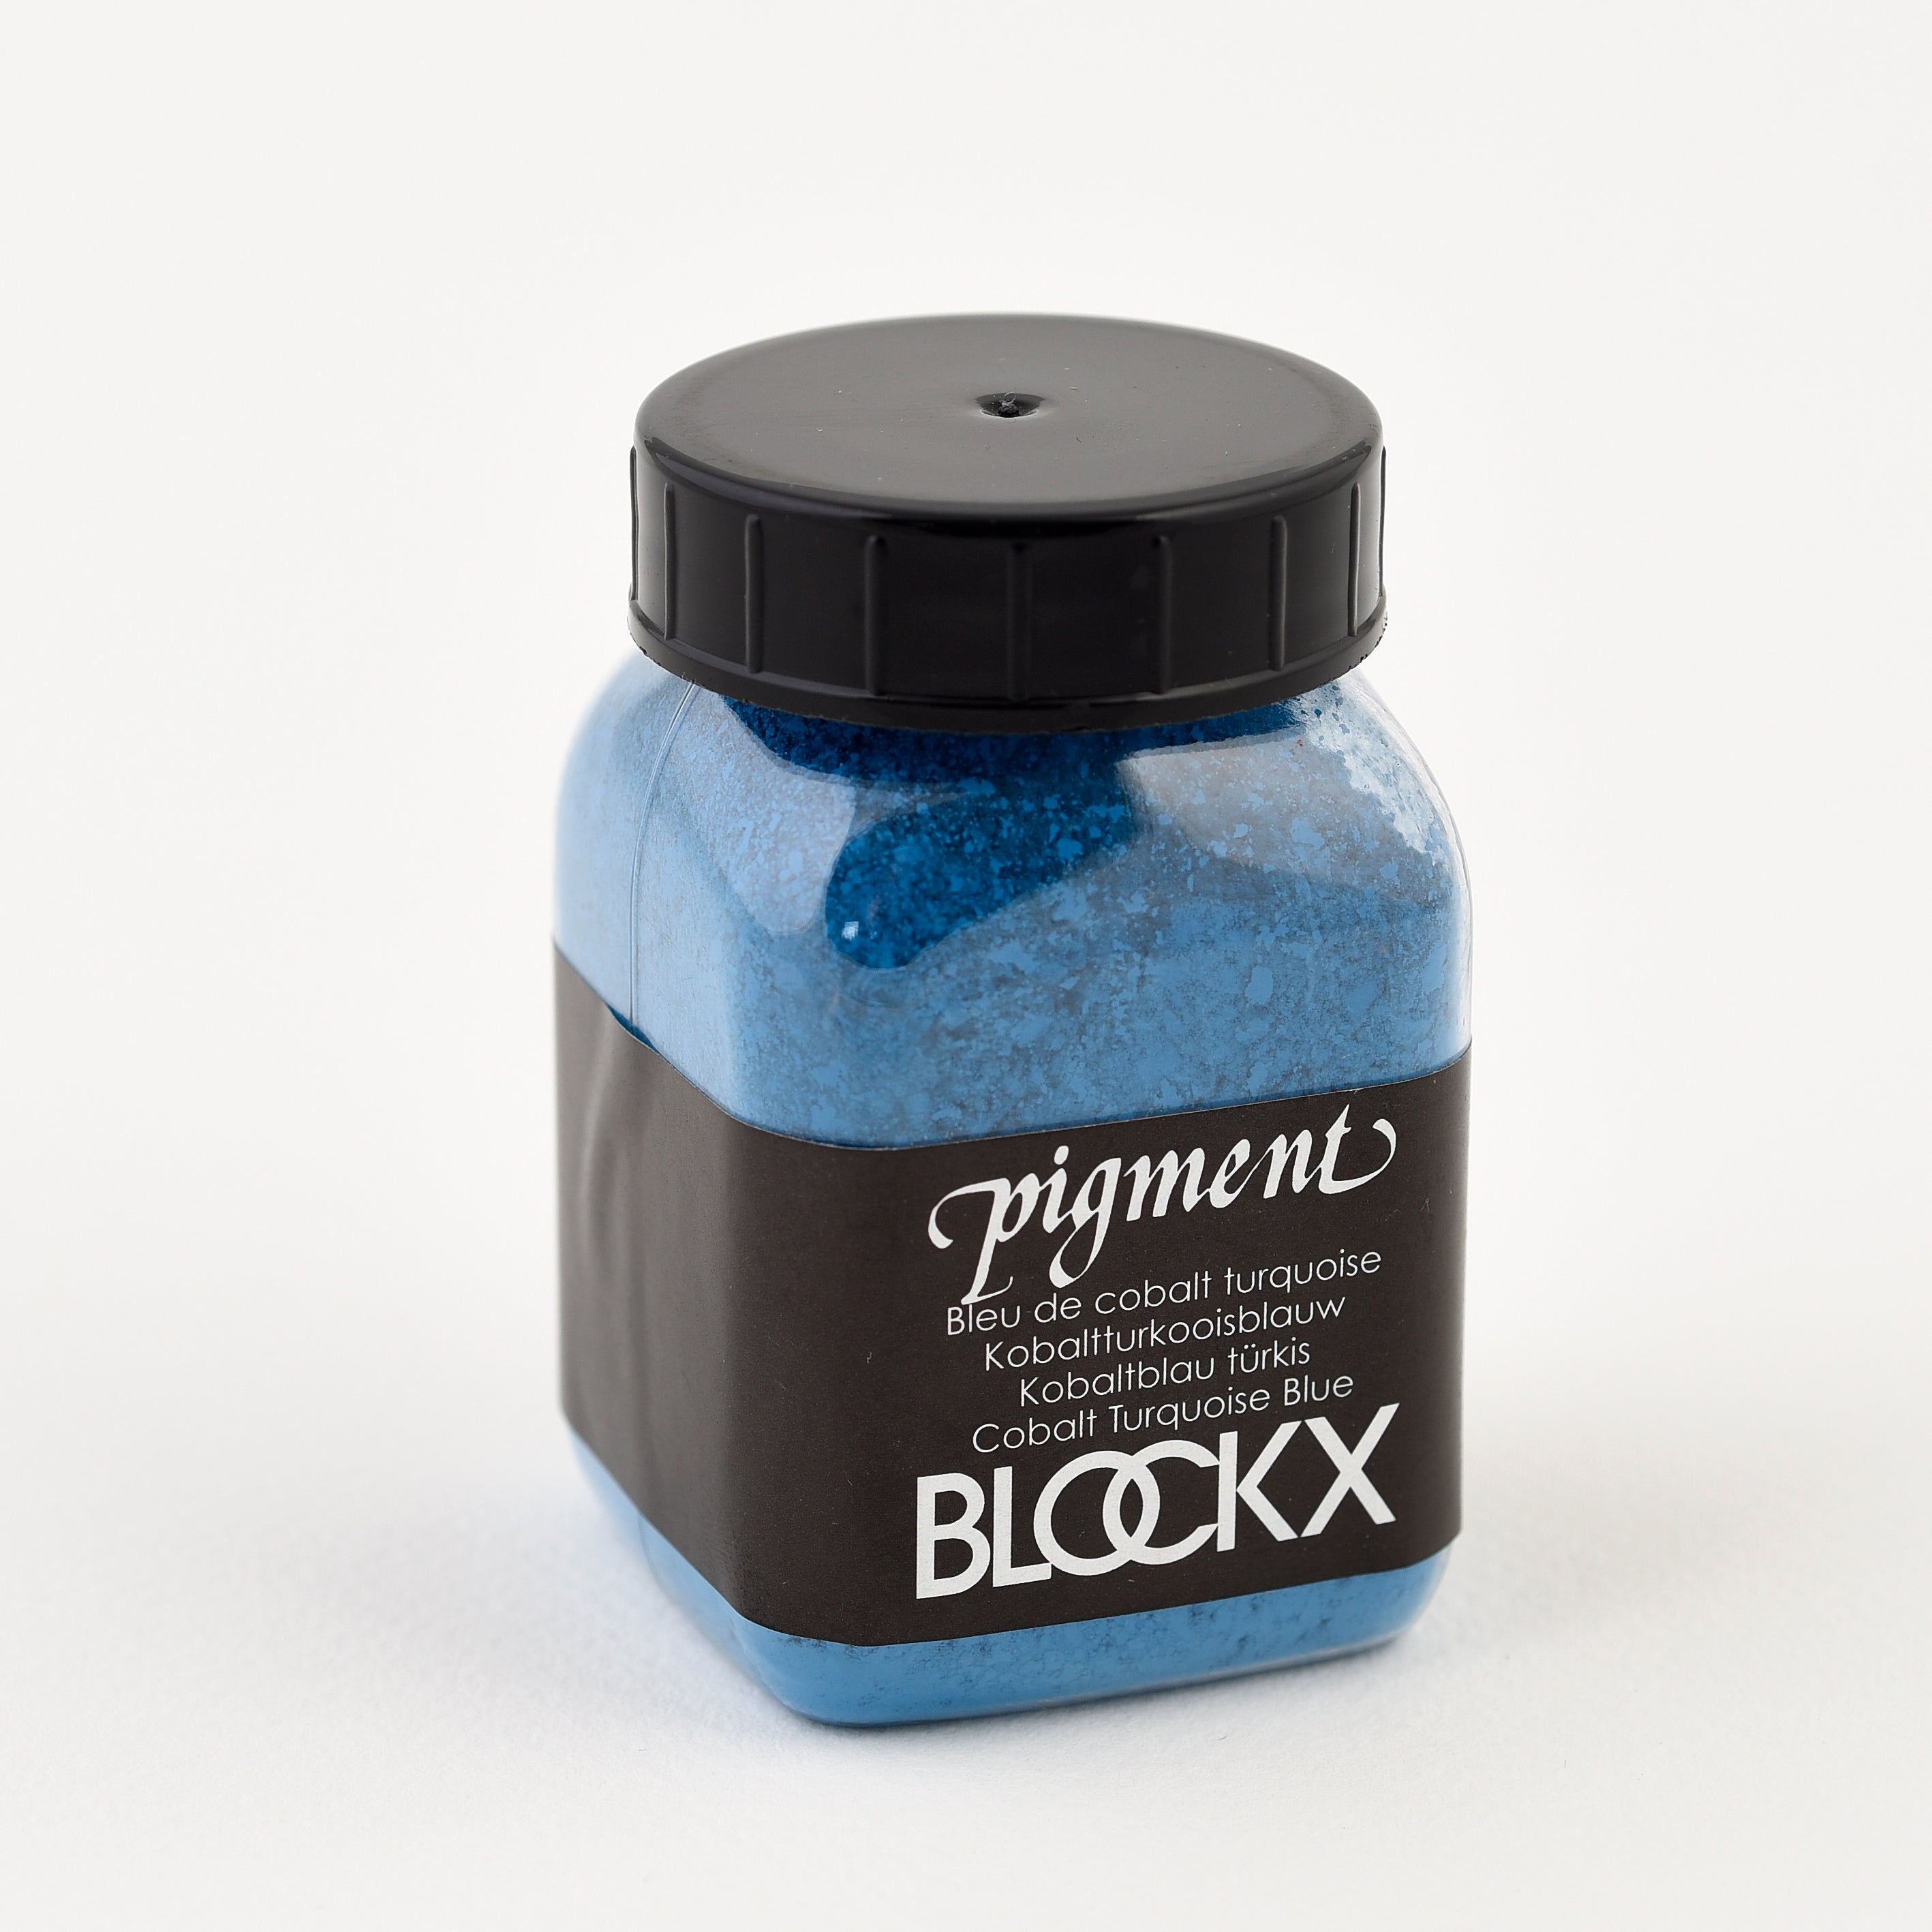 BLOCKX Pigment 100ml/100g Cobalt Turquoise Blue